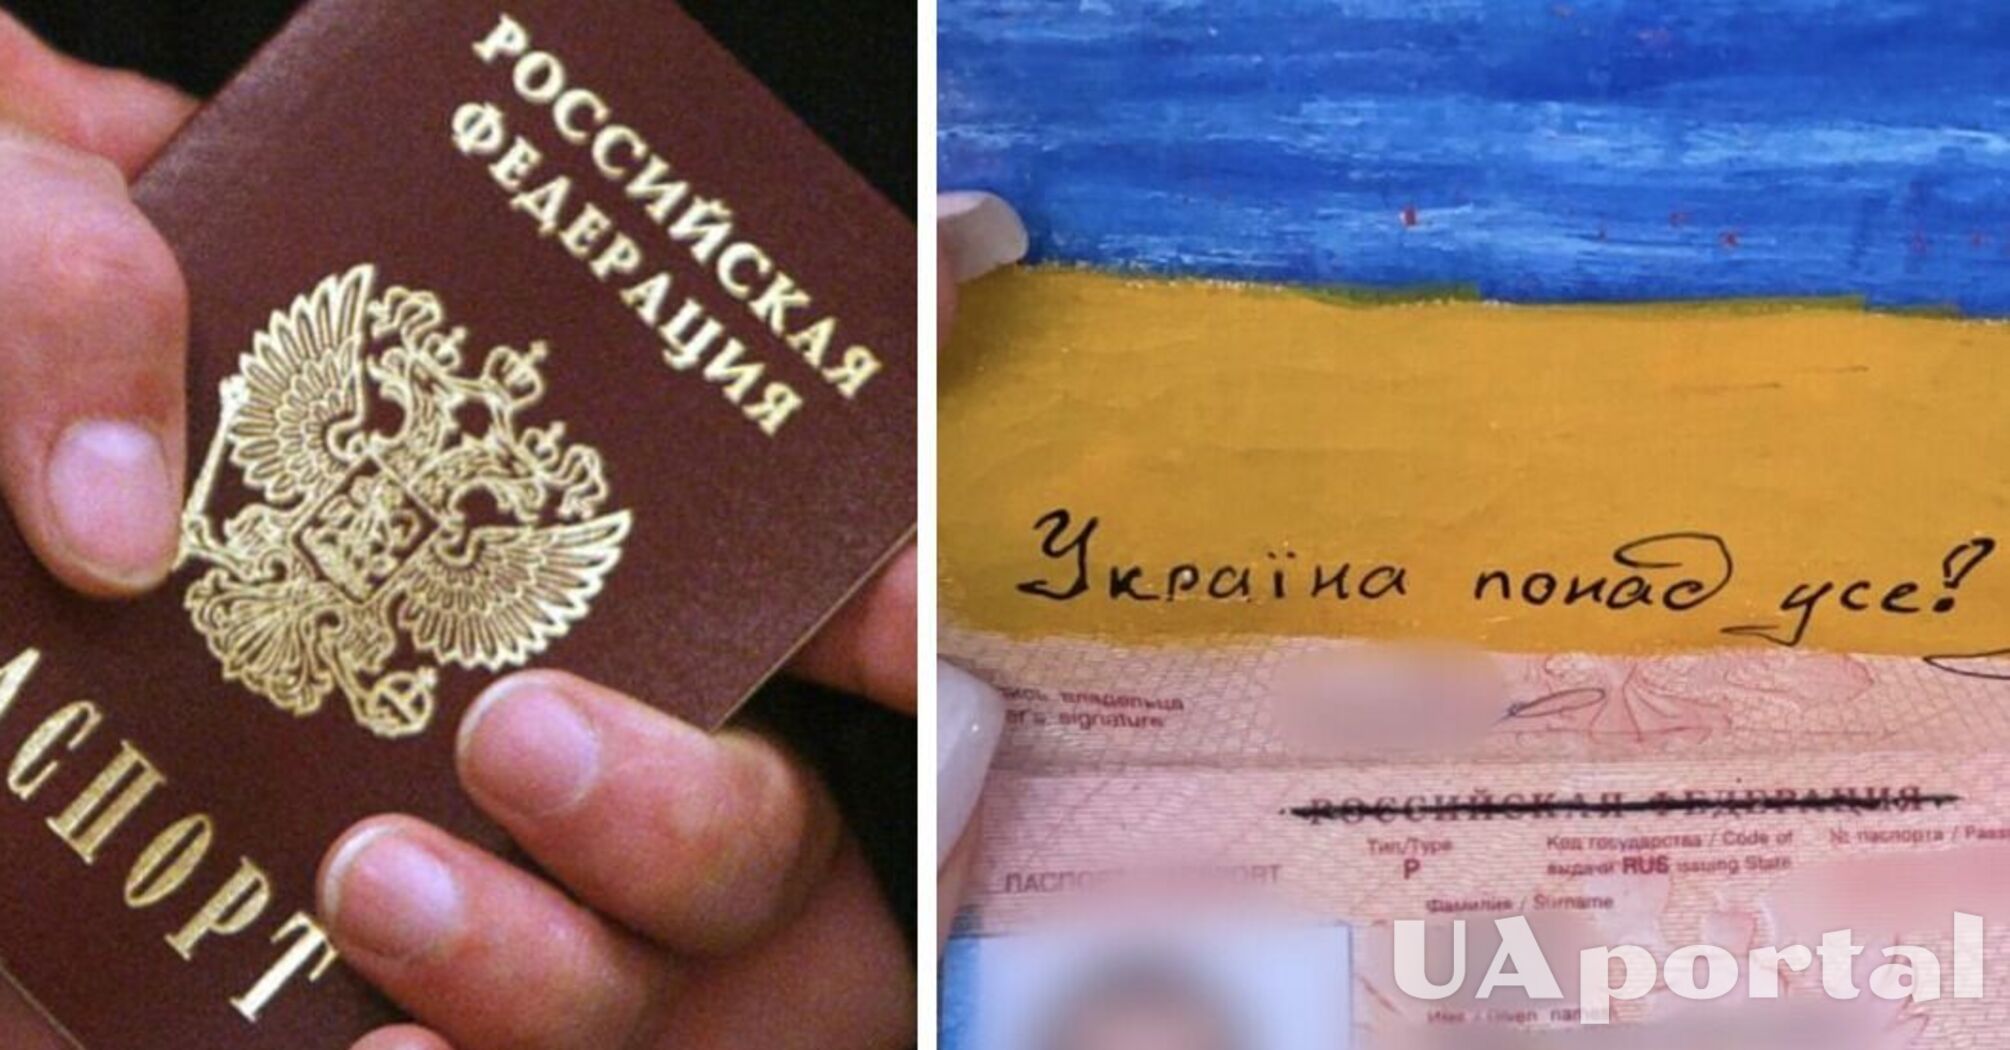 Разрисовал паспорт и обозвал путина: в Украине задержали россиянина, который не хотел возвращаться домой (фото)